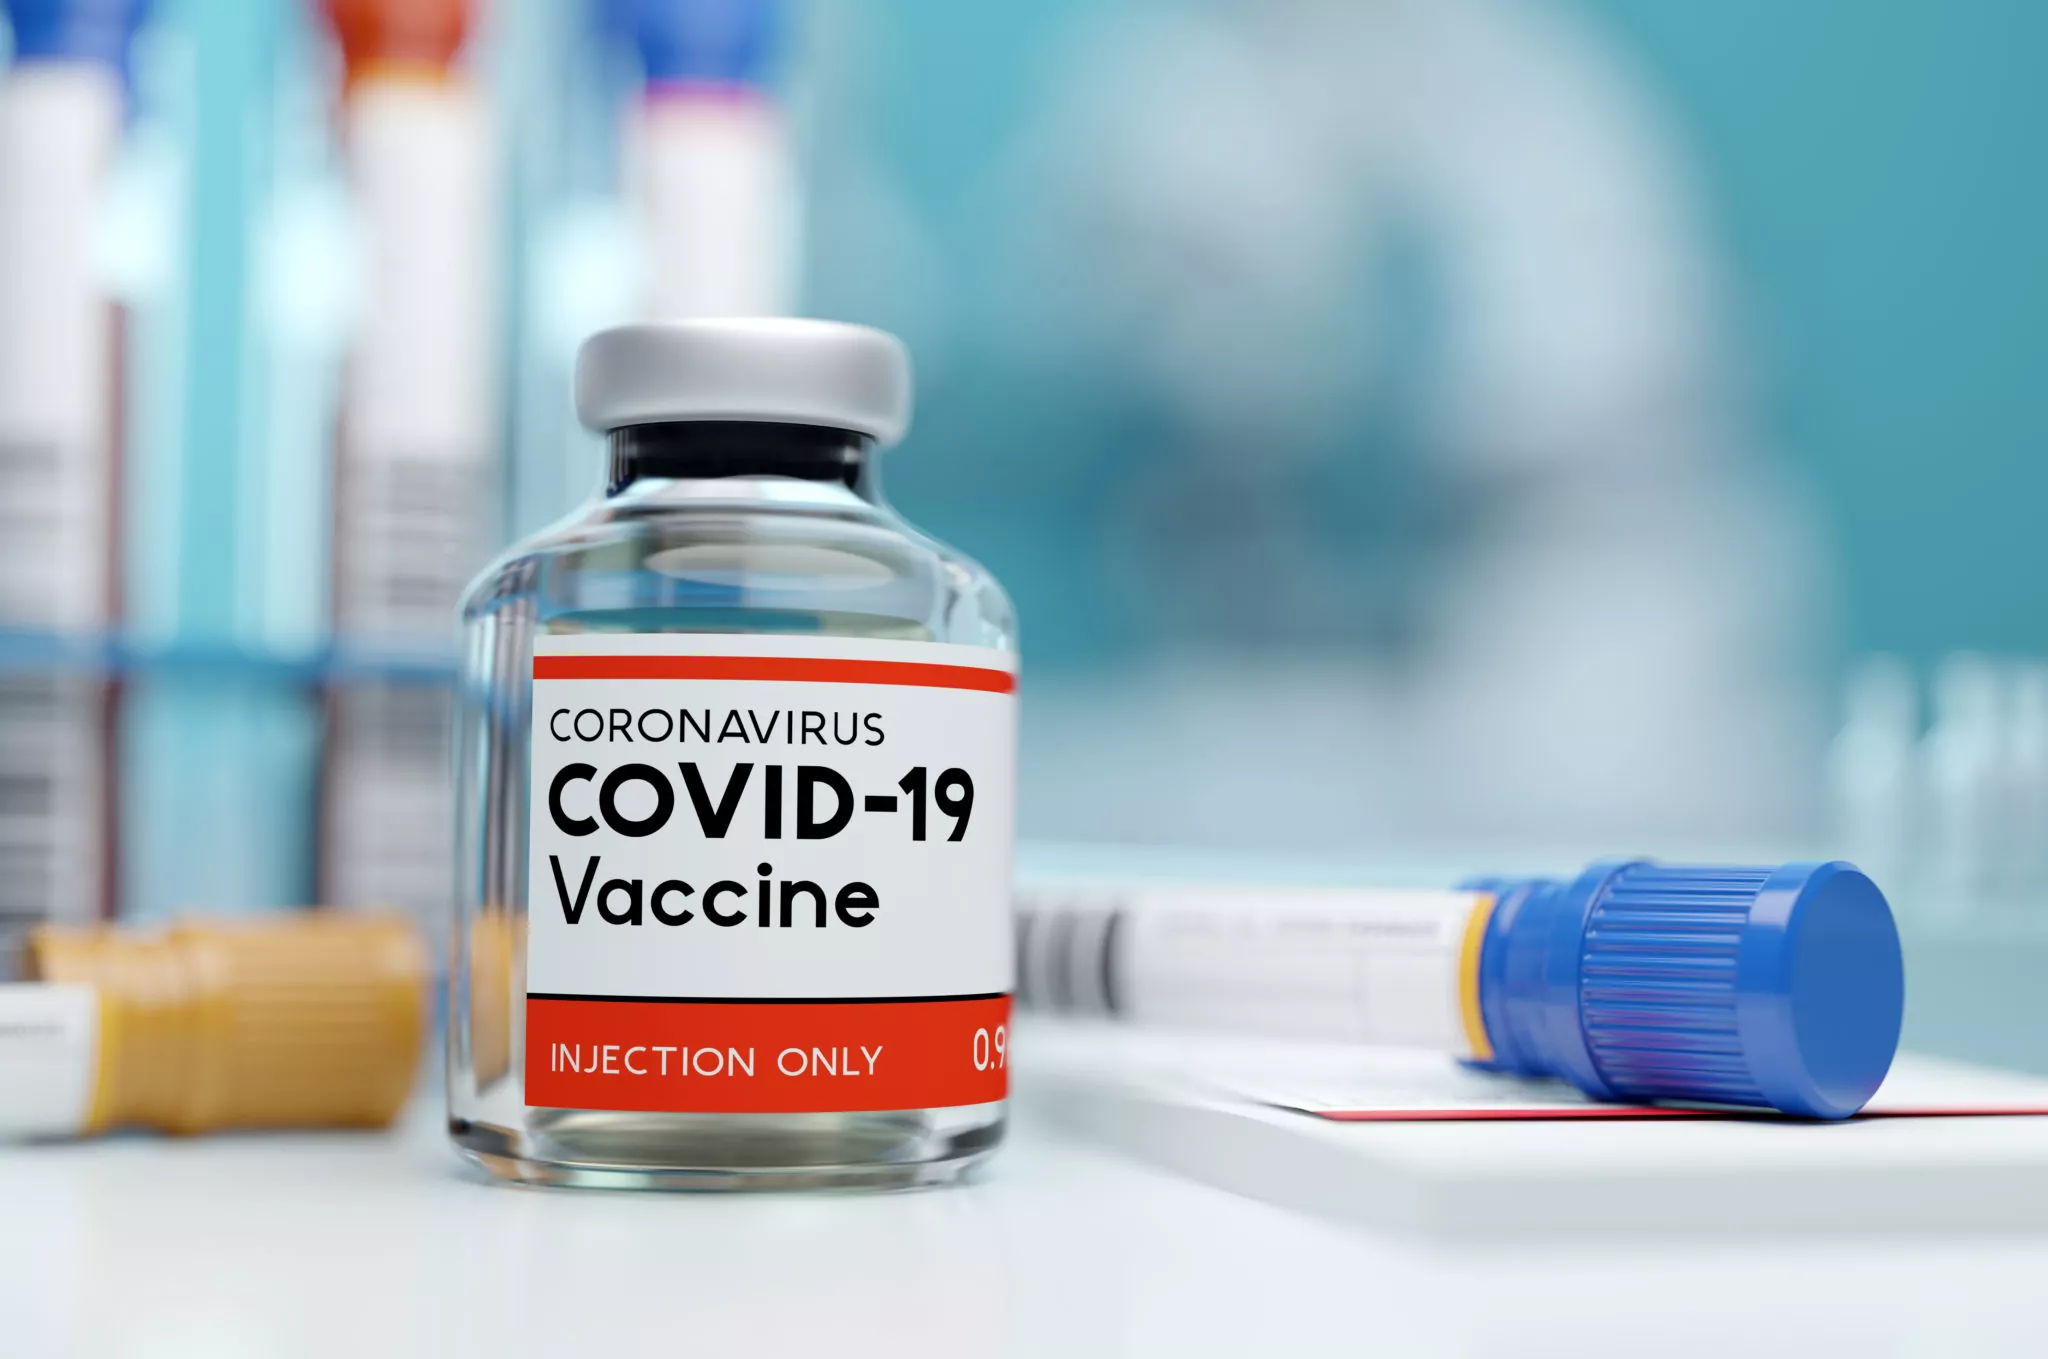 Casi di emofilia A acquisita a seguito dei vaccini COVID-19: segnale di sicurezza convincente o possibile errore di segnalazione?